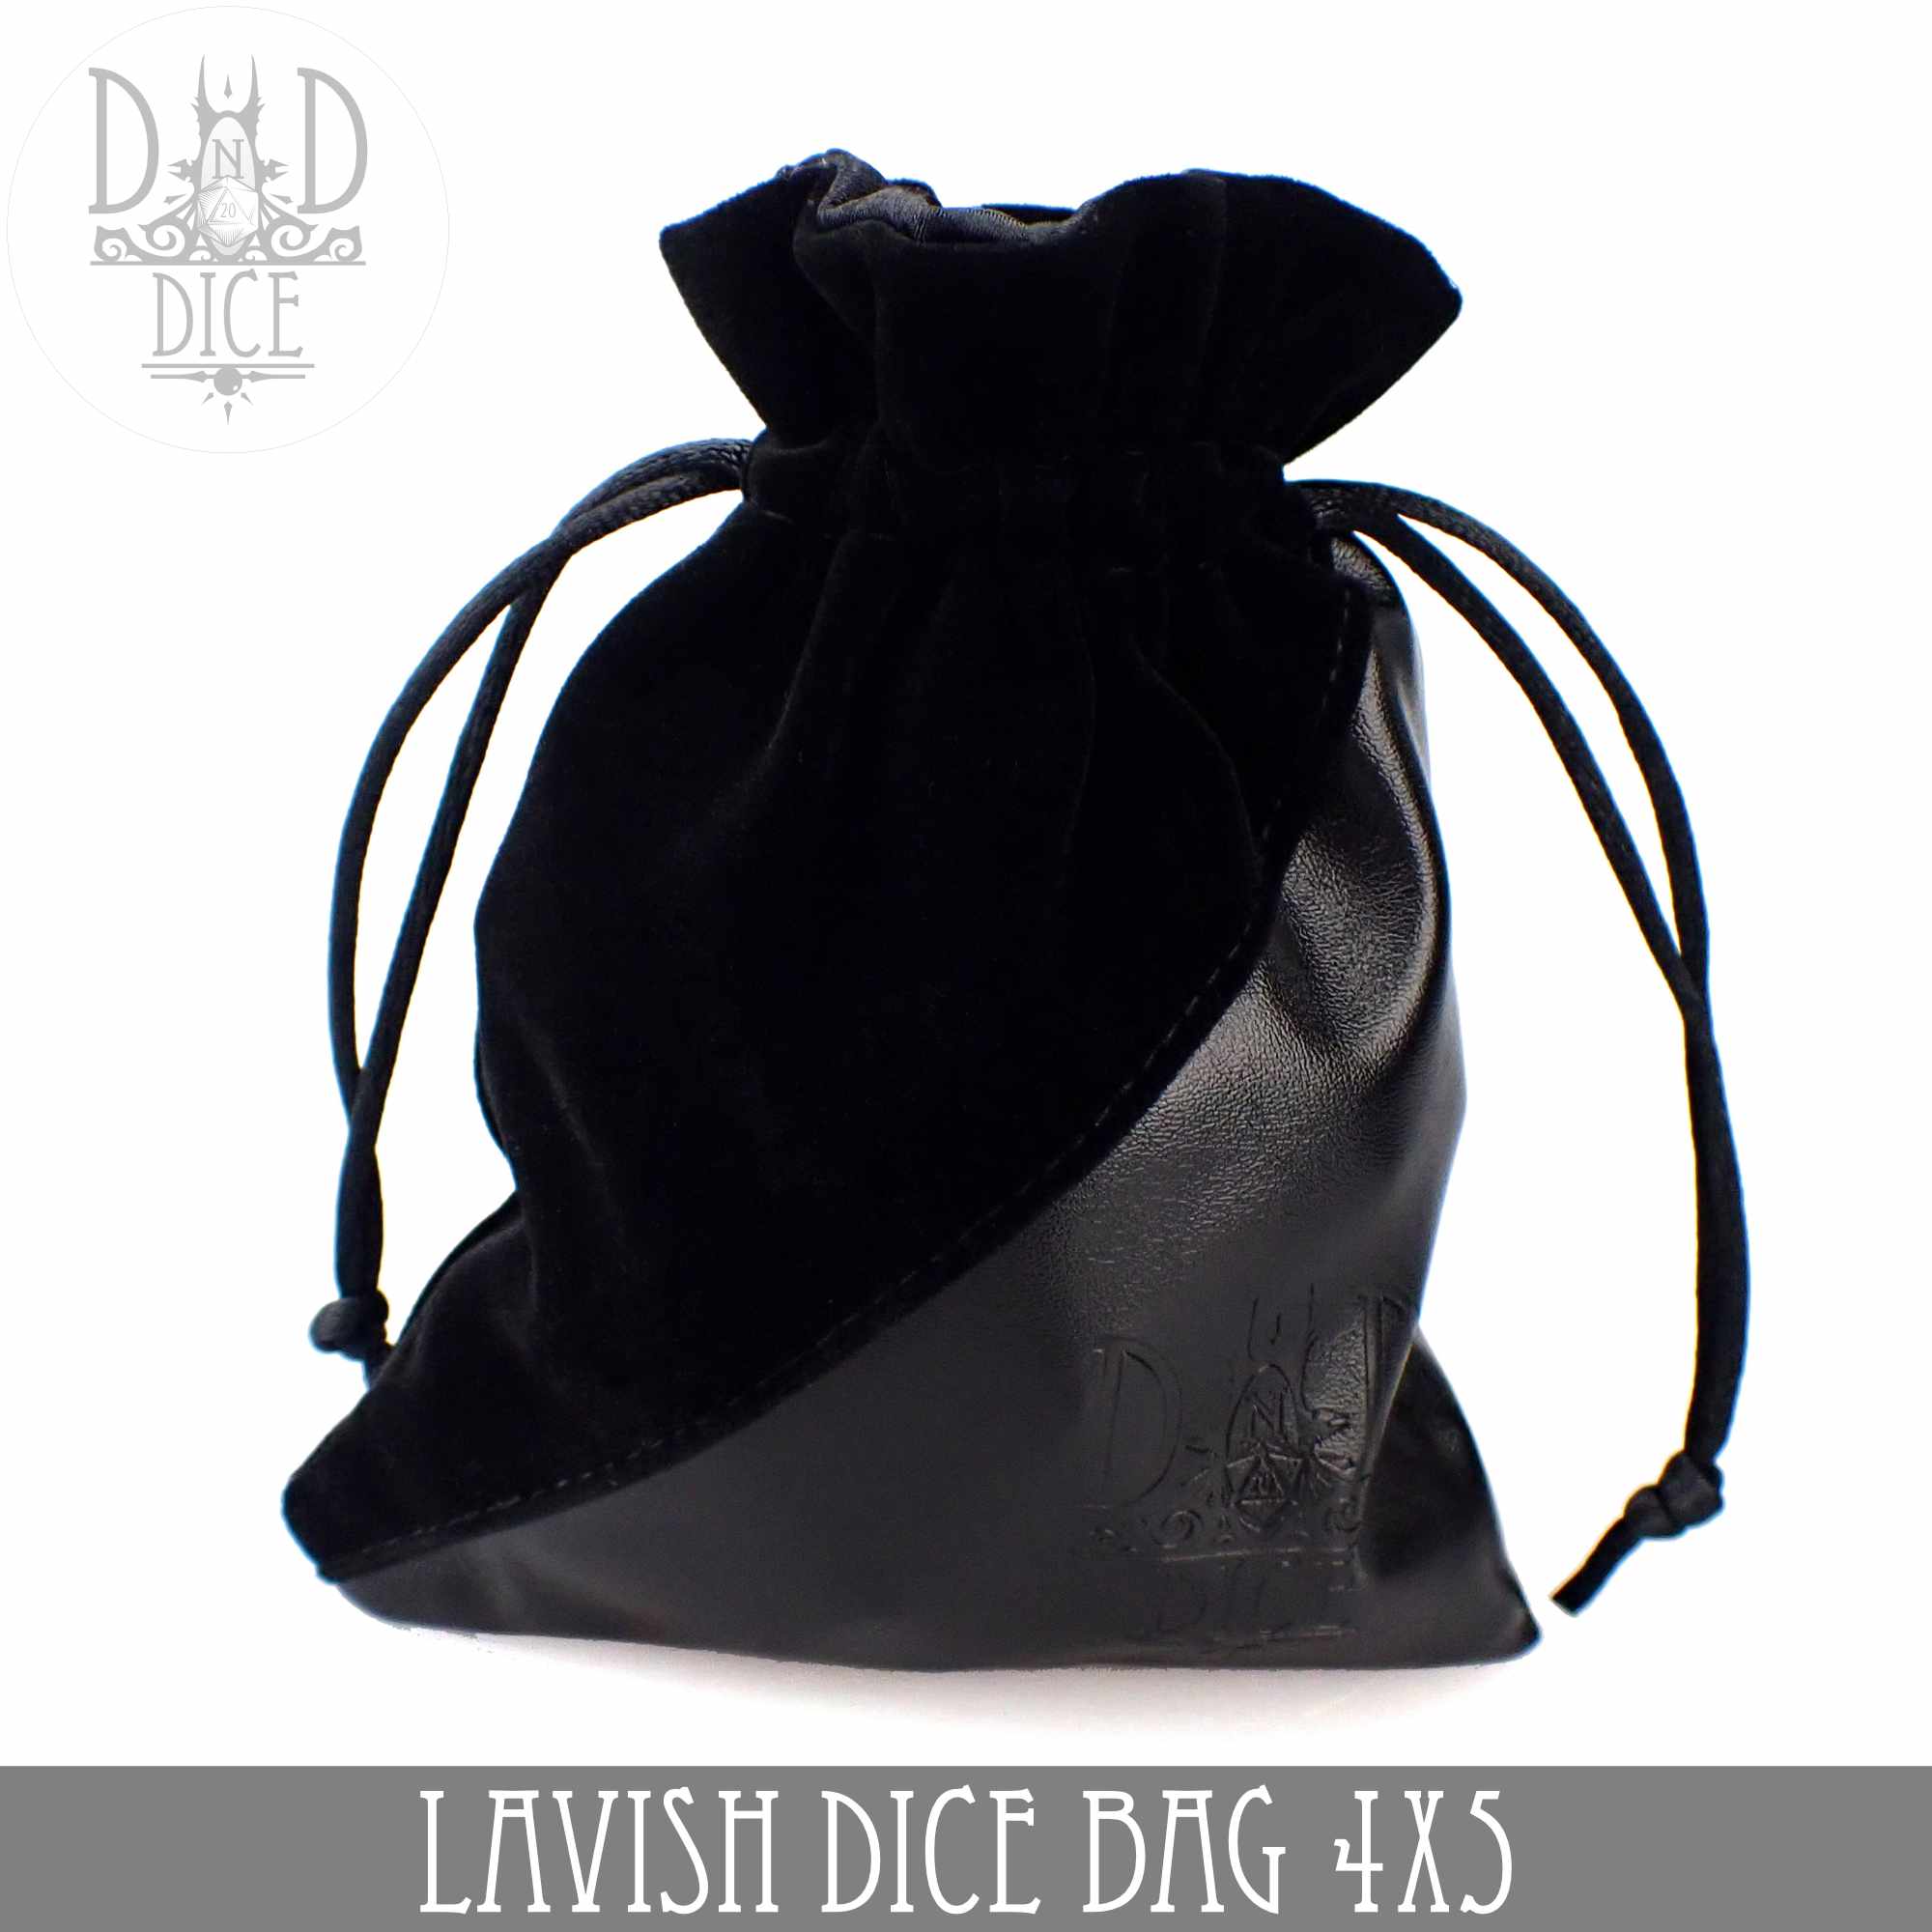 Premium Velvet Dice Bags, Black Velvet with Satin Lining